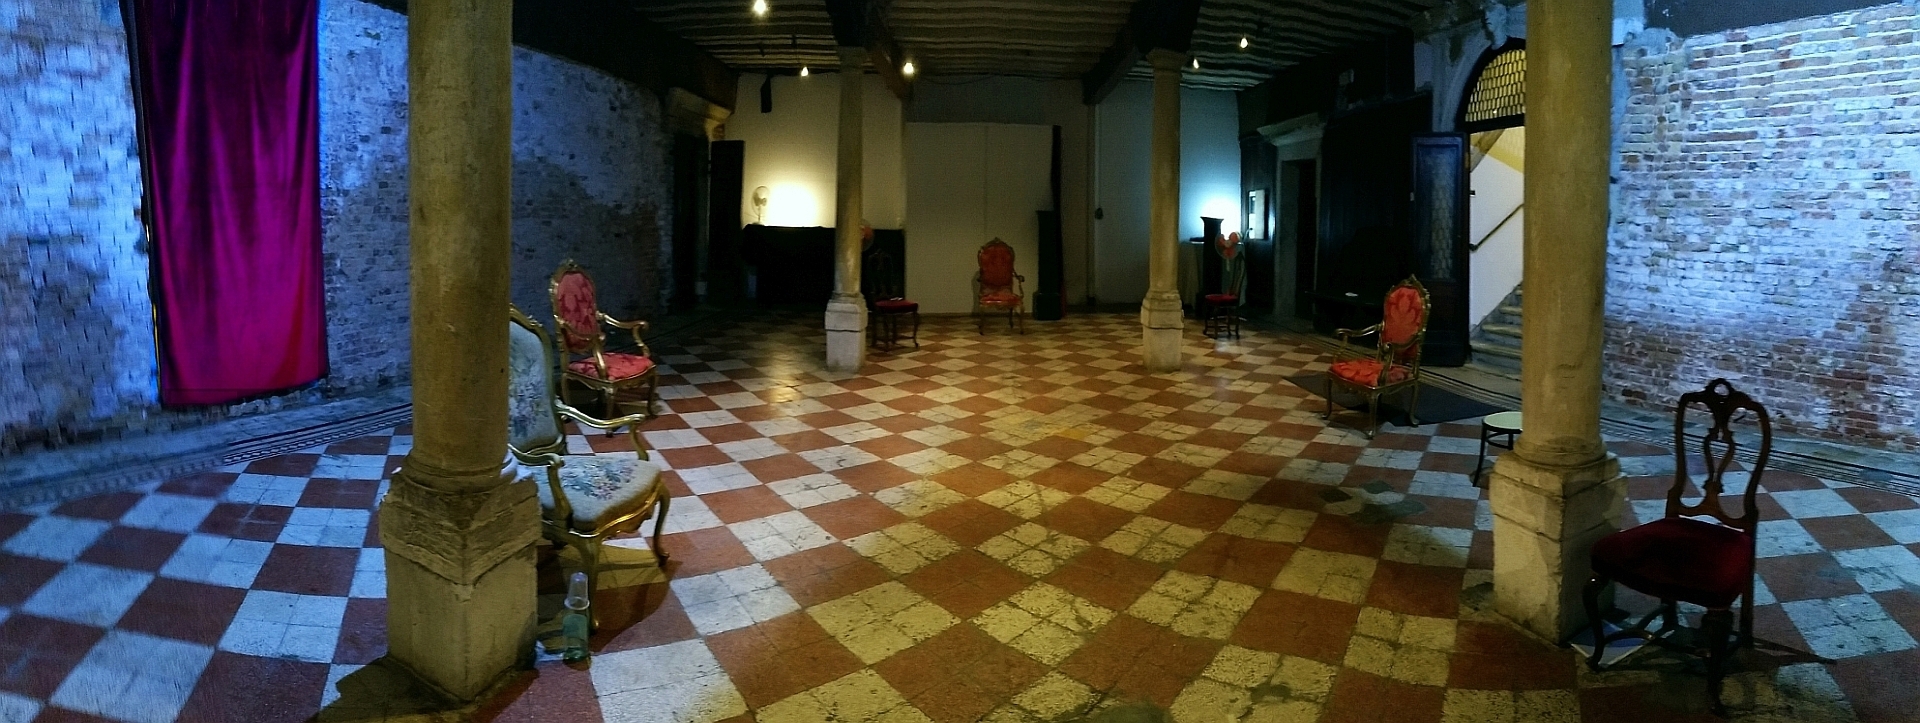 Nach Möglichkeit besuchen wir bei dieser Führung diesen Raum in einem kleinen Palazzo, der bis 2020 als Freimaurer-Tempel bei Ritualen genutzt wurde.